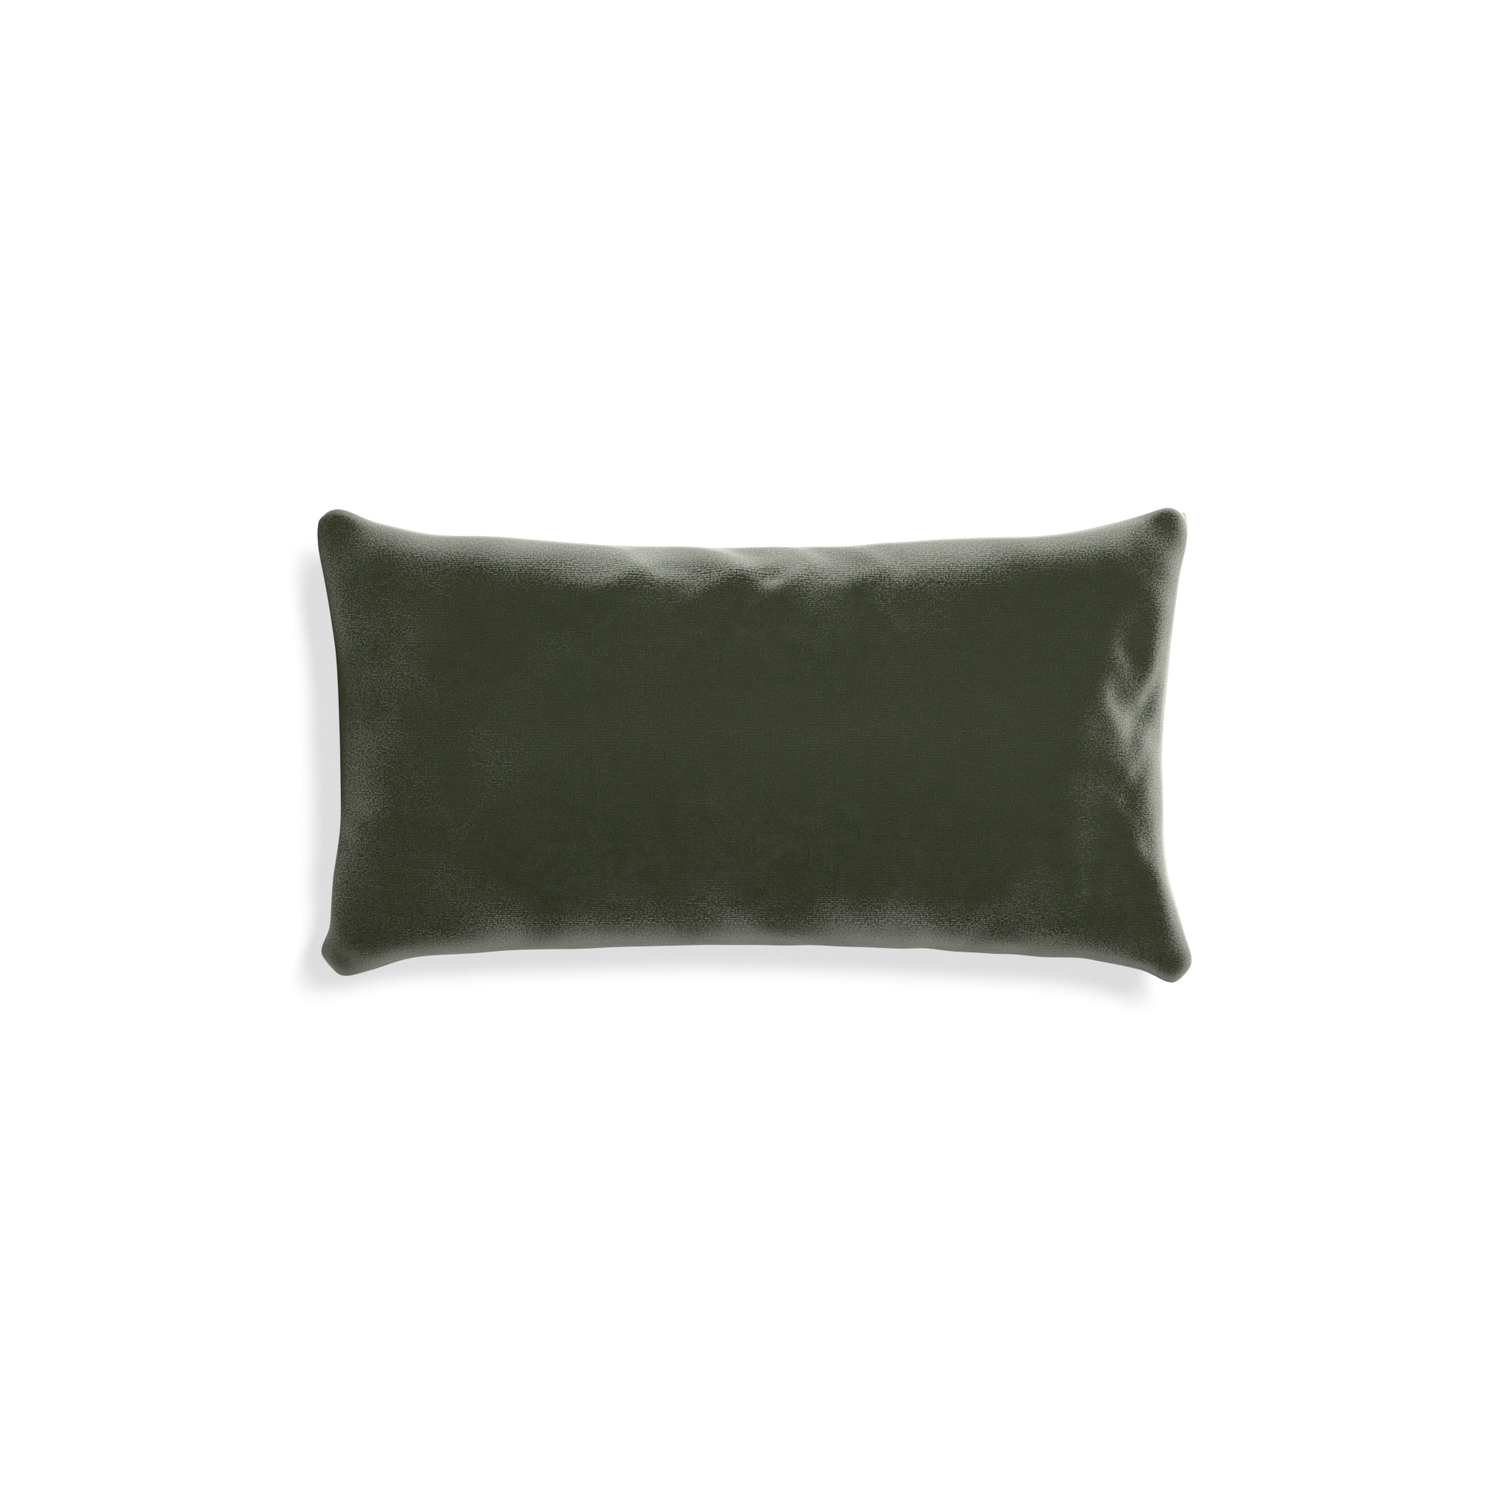 rectangle fern green pillow 